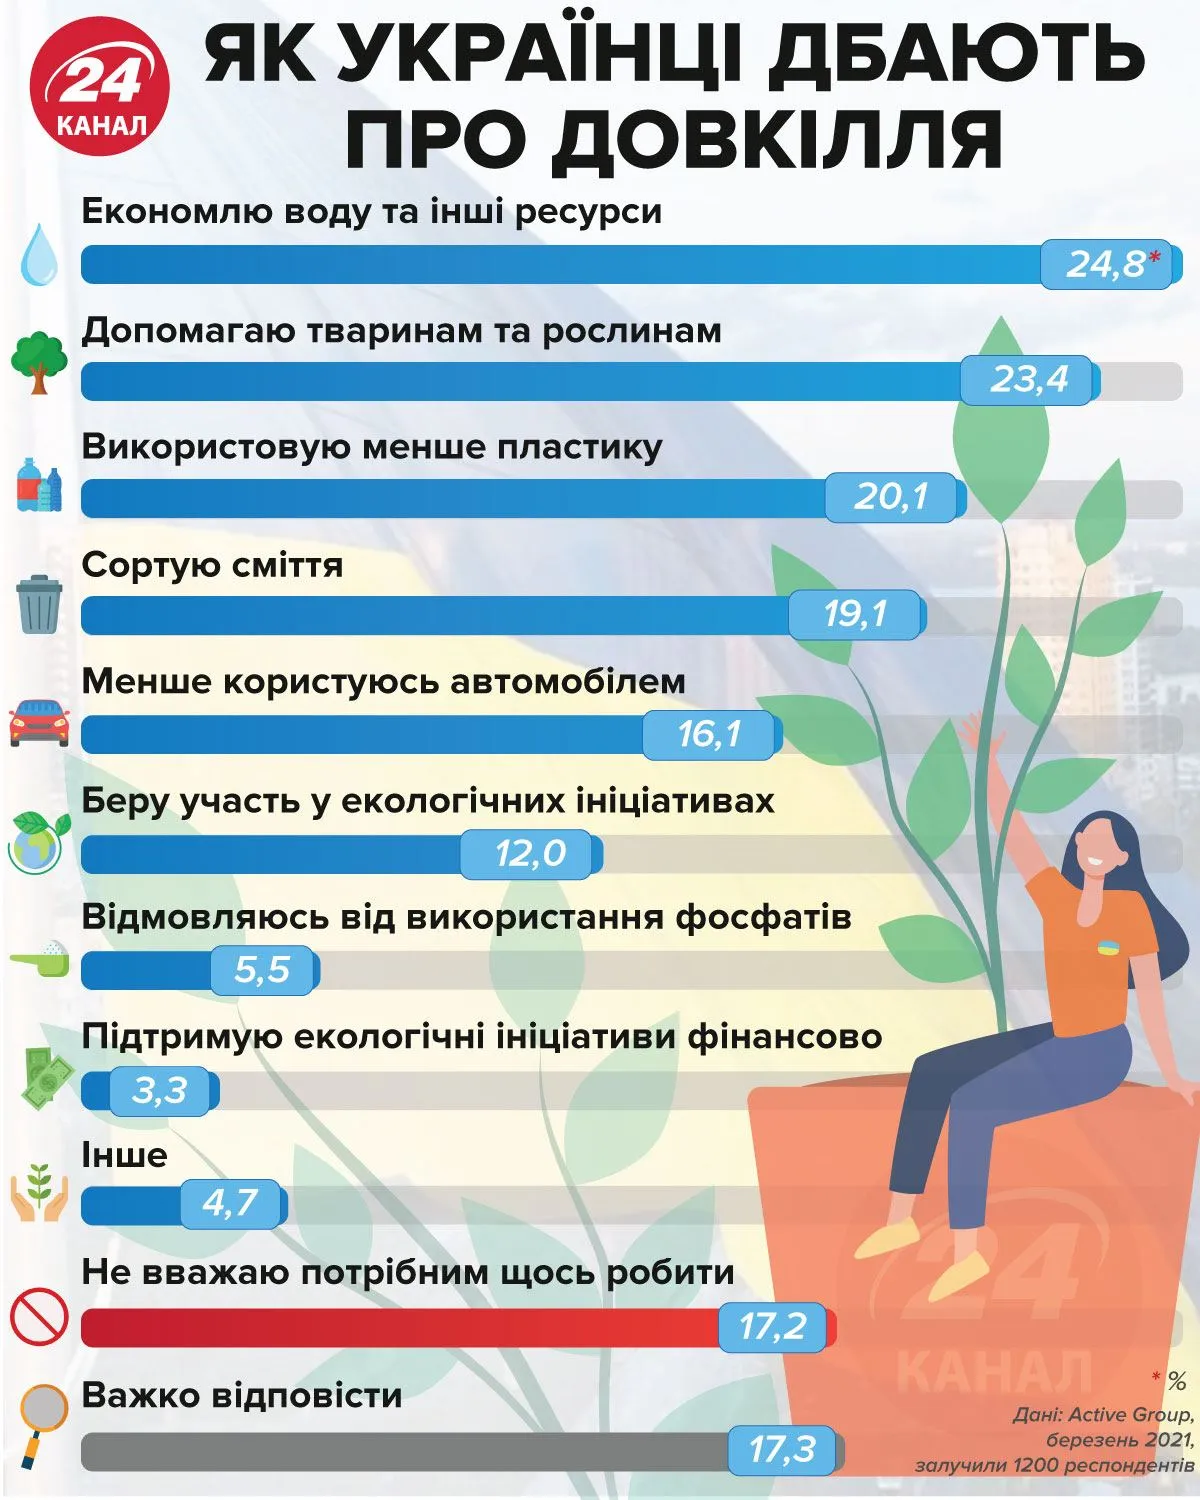 Як українці дбають про довкілля  Інфографіка 24 каналу